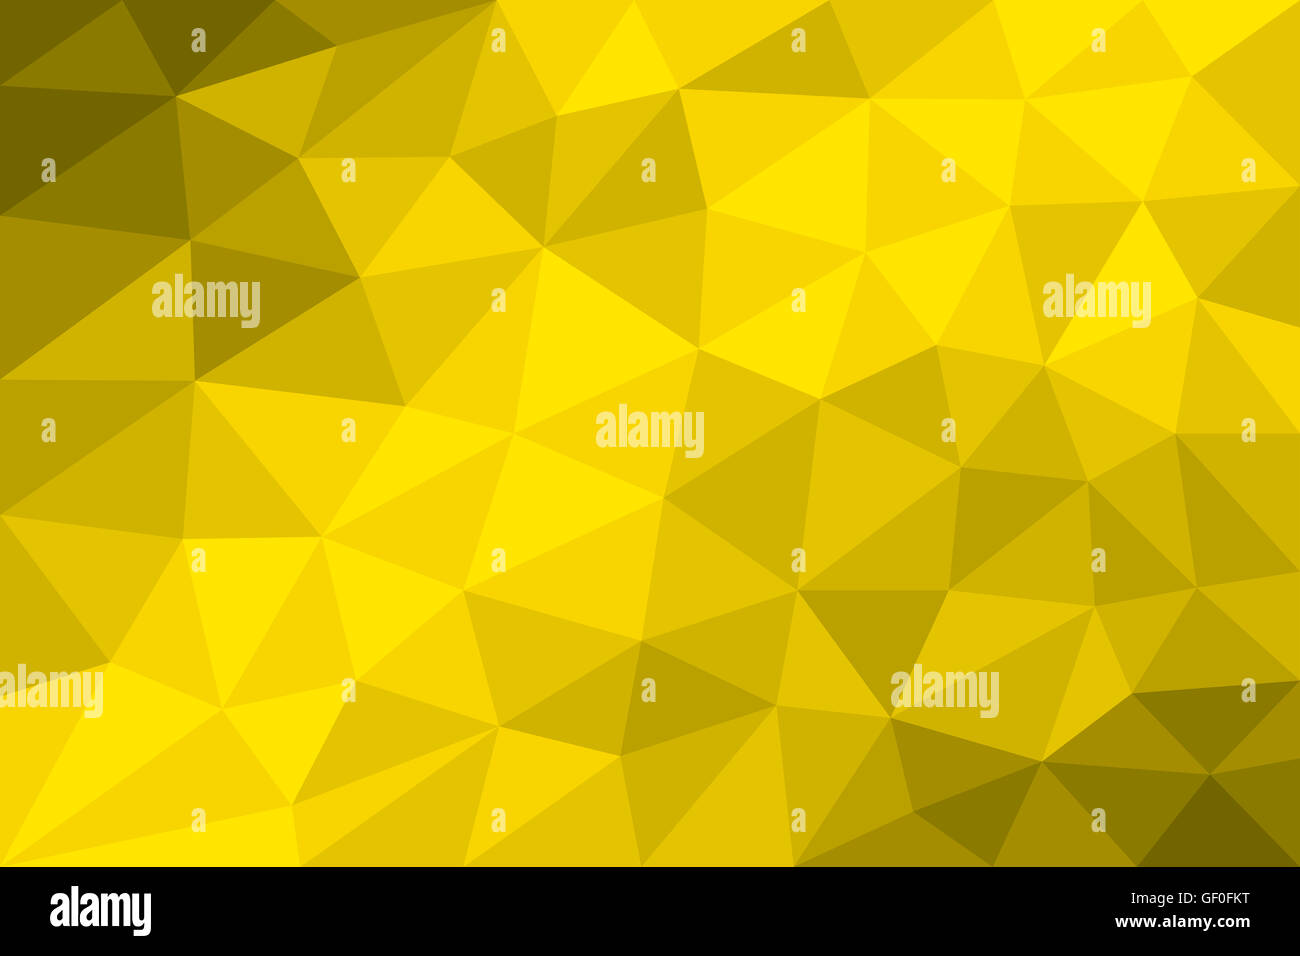 Low-Poly Hintergrund gelb mit Dreiecken unterschiedlicher Größe gebildet. Variation der abgestuften gelbe Felder. Abbildung. Stockfoto